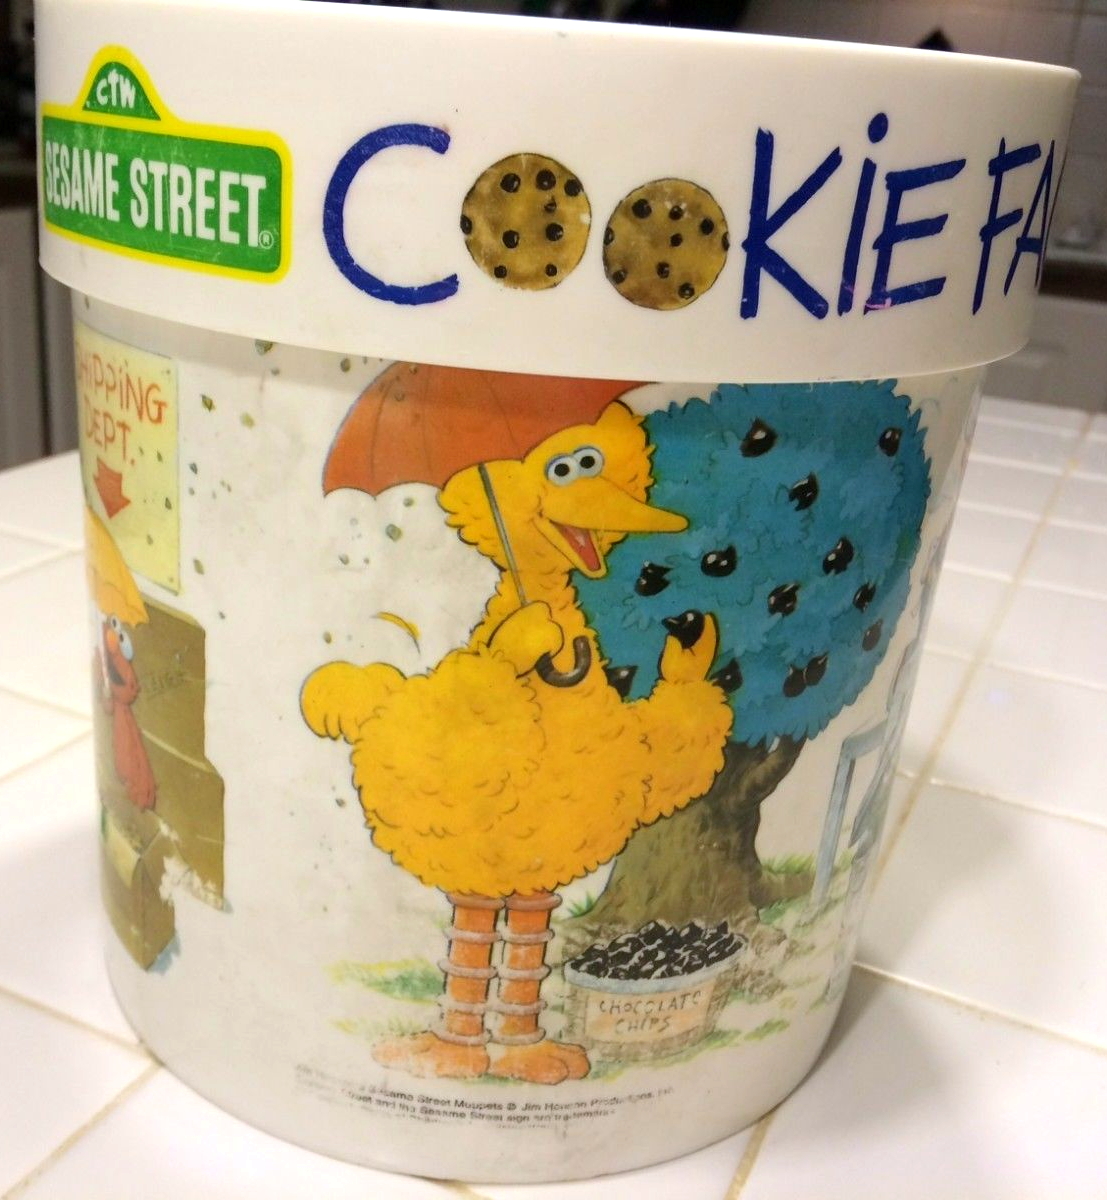 Muppets Sesame Street Cookie Monster Cookie Jar